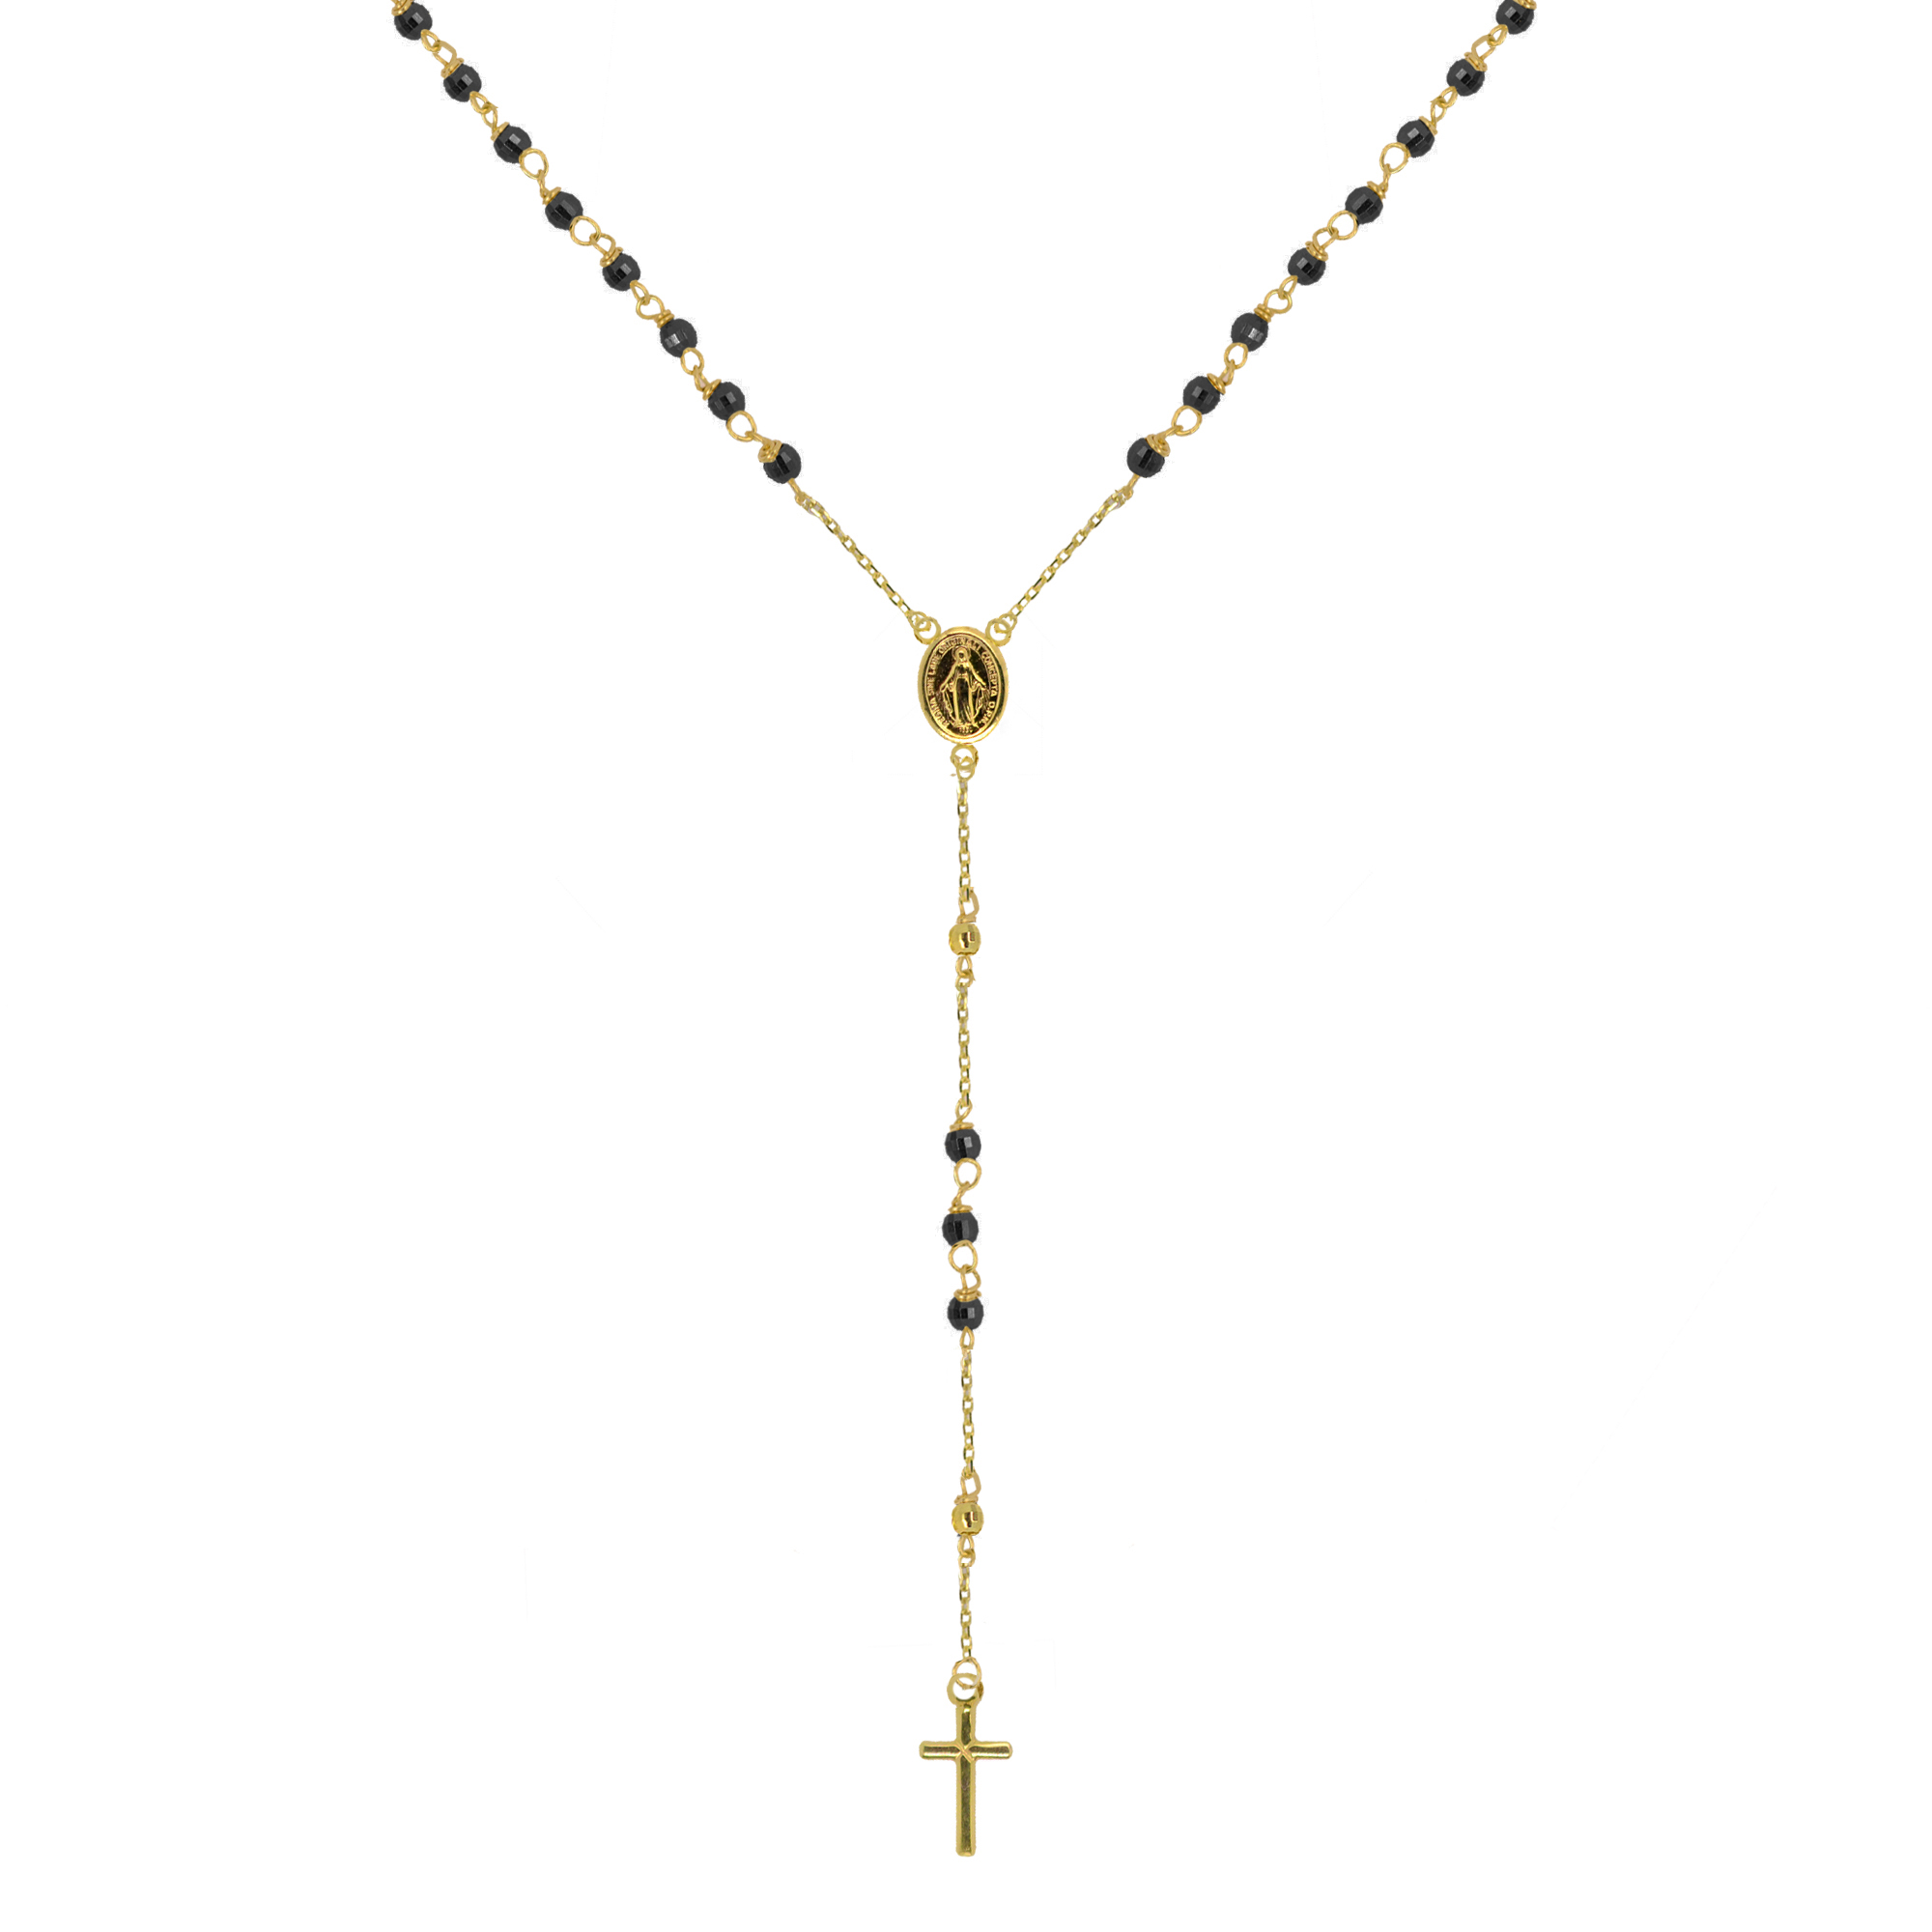 Evolution Group Zlatý 14 karátový náhrdelník růženec s křížem a medailonkem s Pannou Marií RŽ03 černý